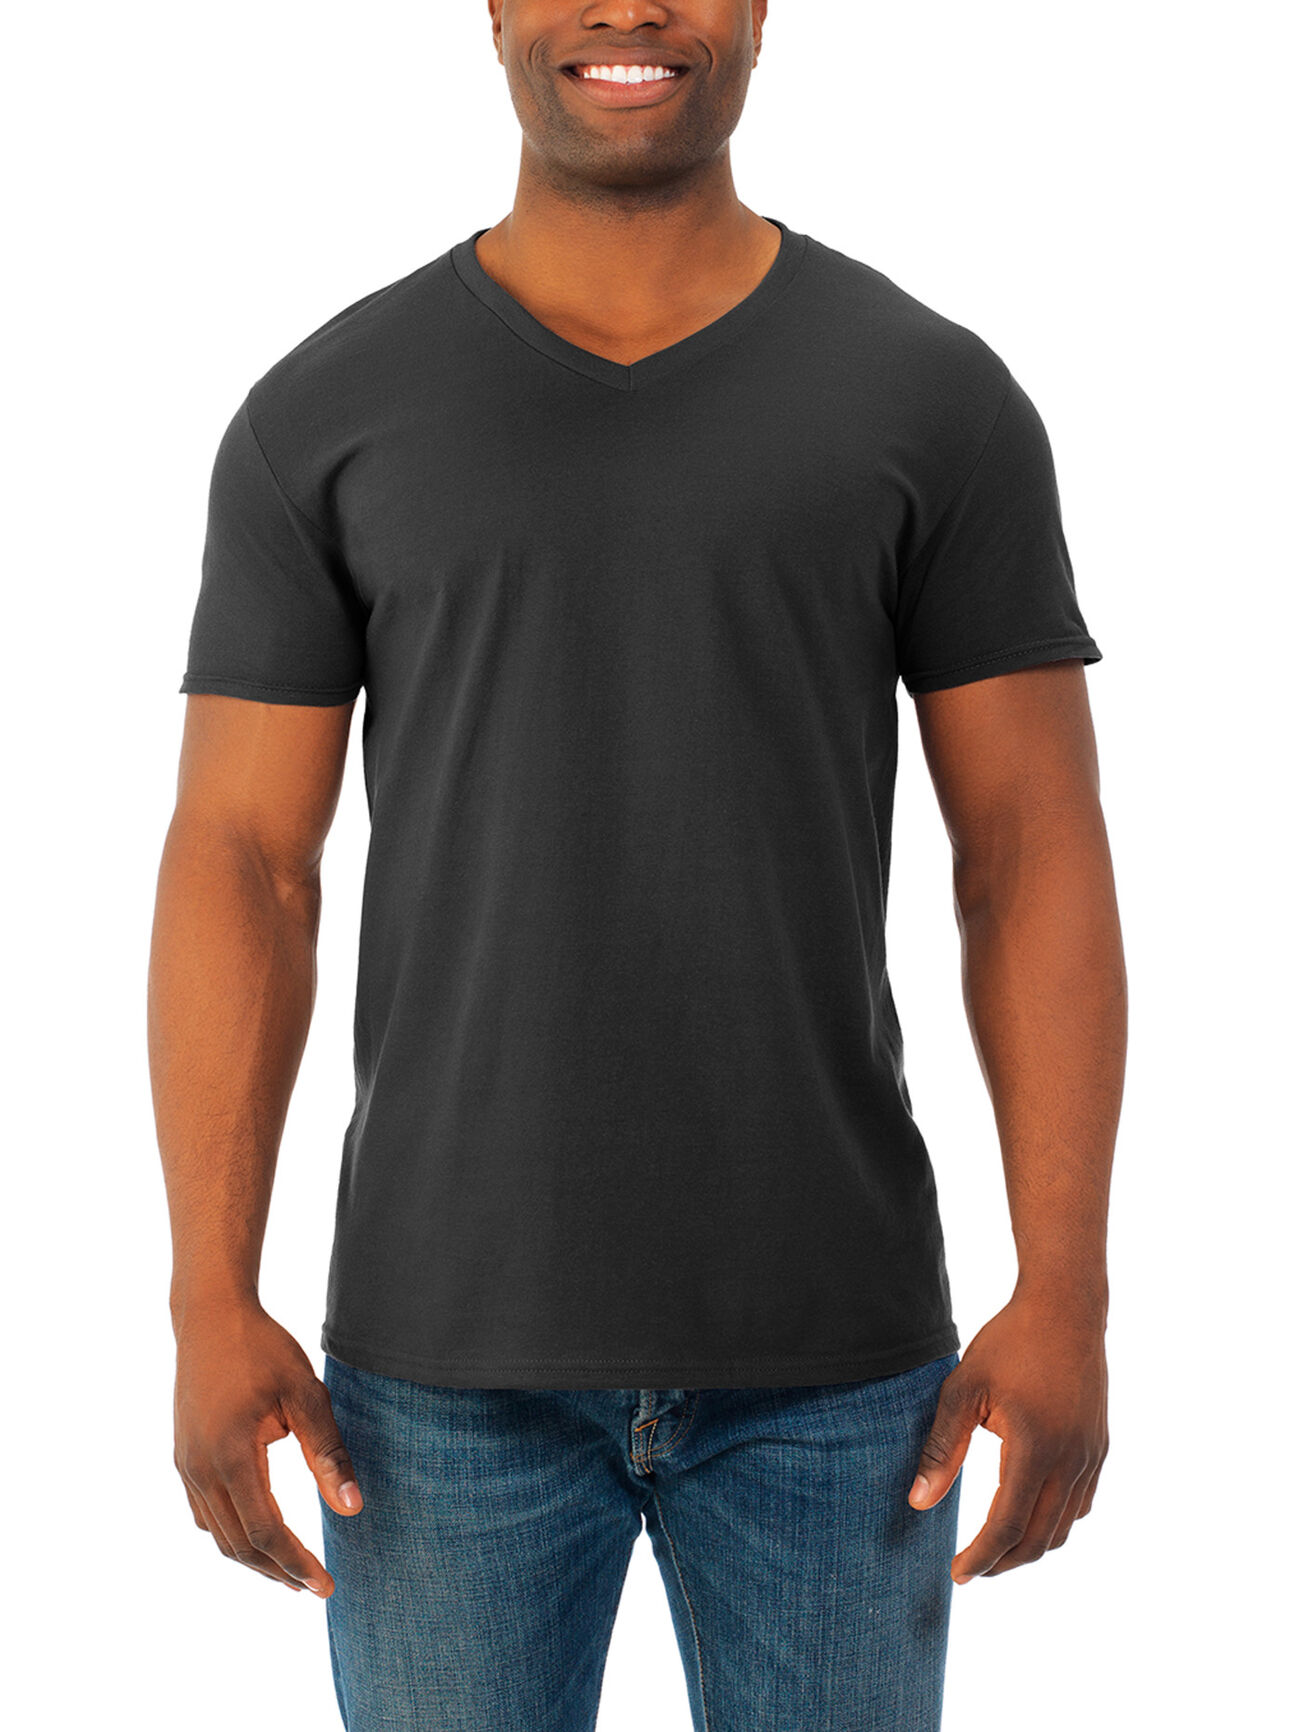 Men's Soft Short Sleeve V-Neck T-Shirt, Extended Sizes 4 Pack Black